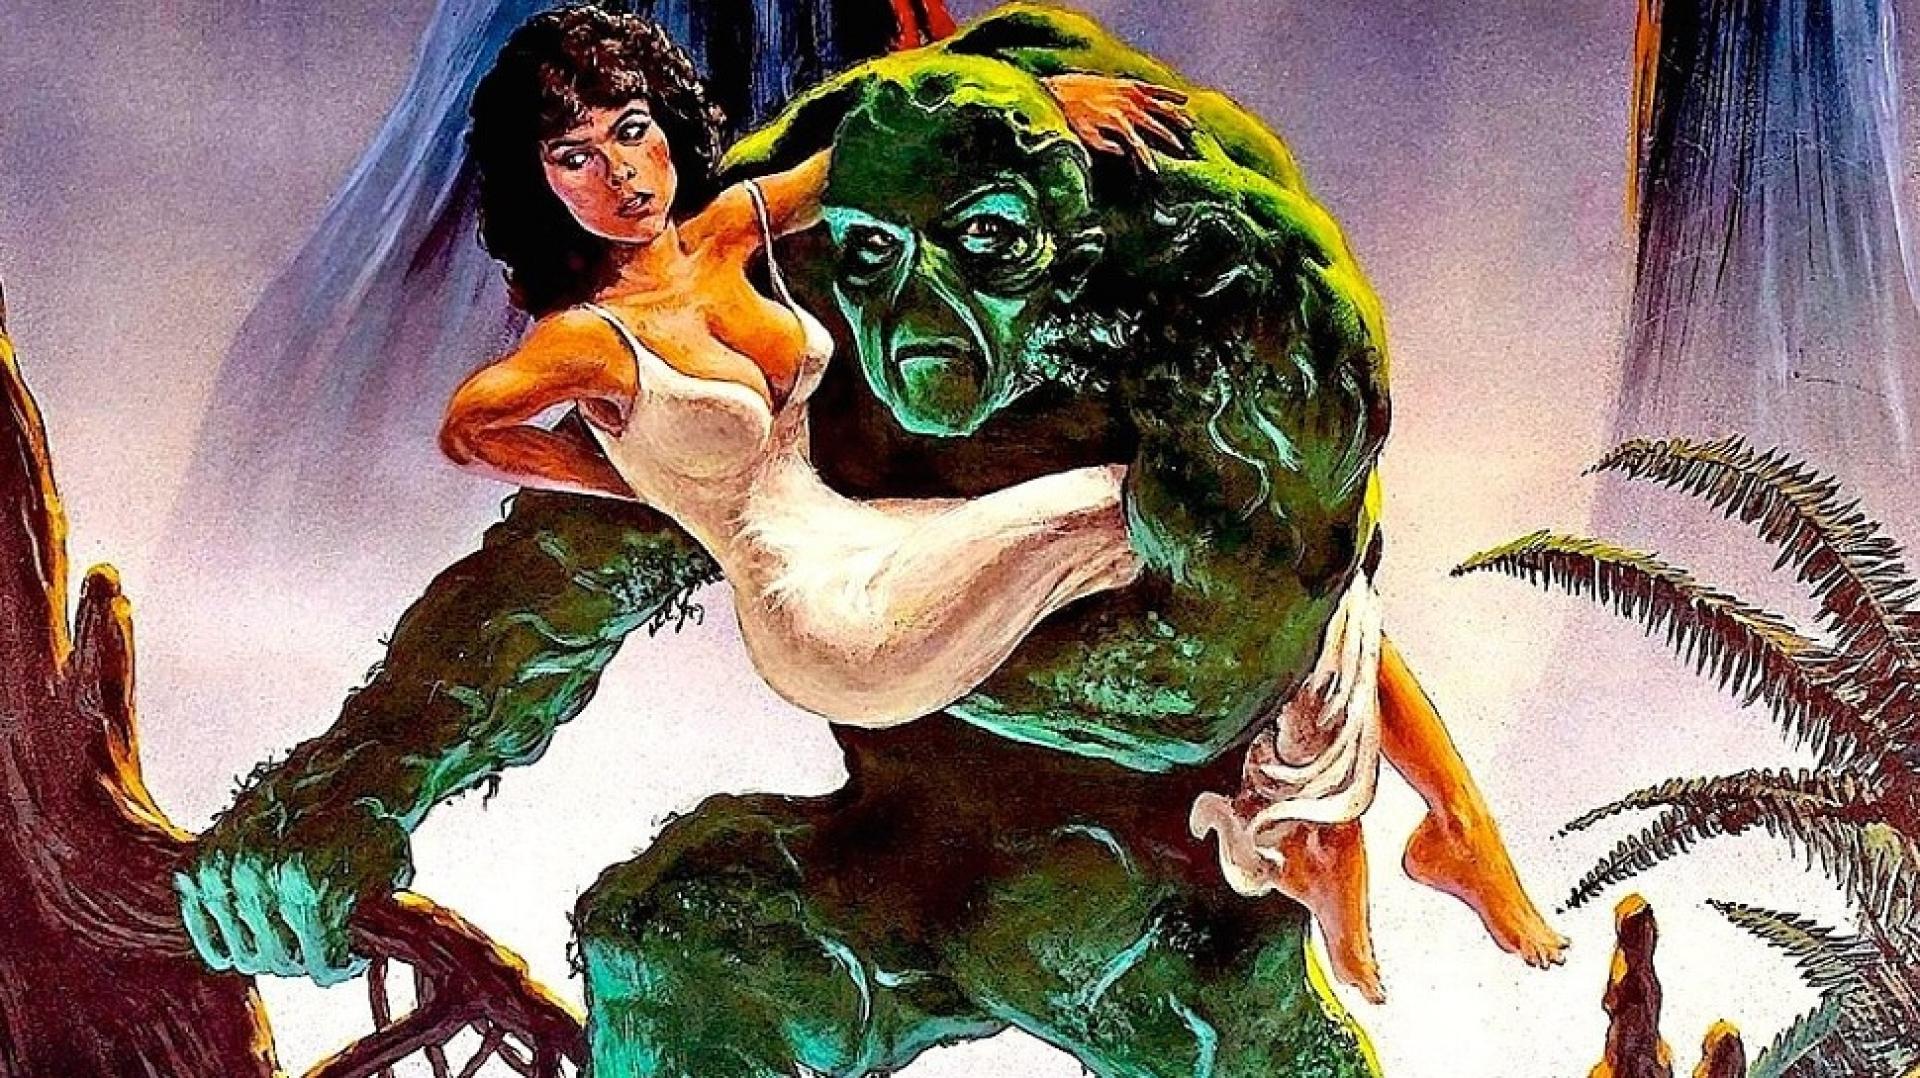 Swamp Thing - Mocsárlény (1982)